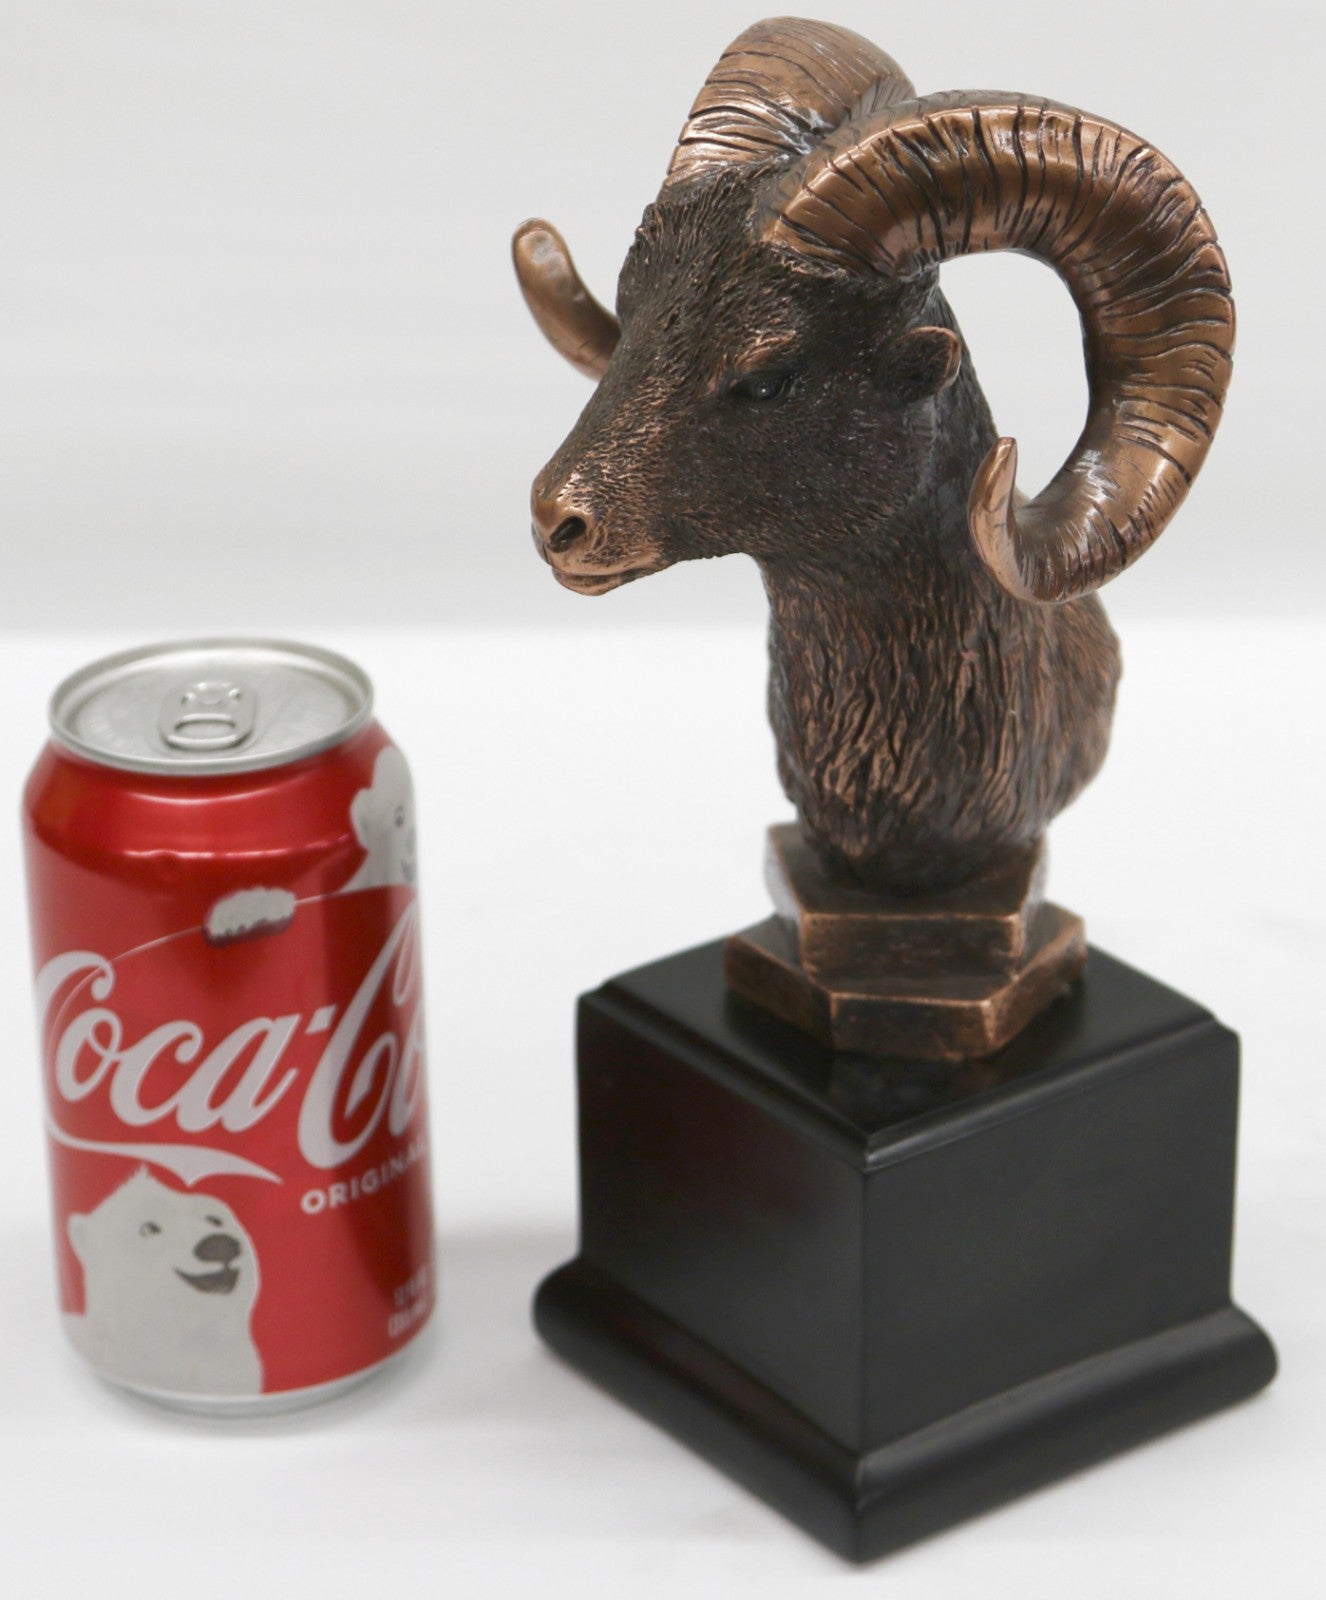 10" Bronze Resin Ram Goat Head w/ Horns - Pedestal Statue Bust Black Stand